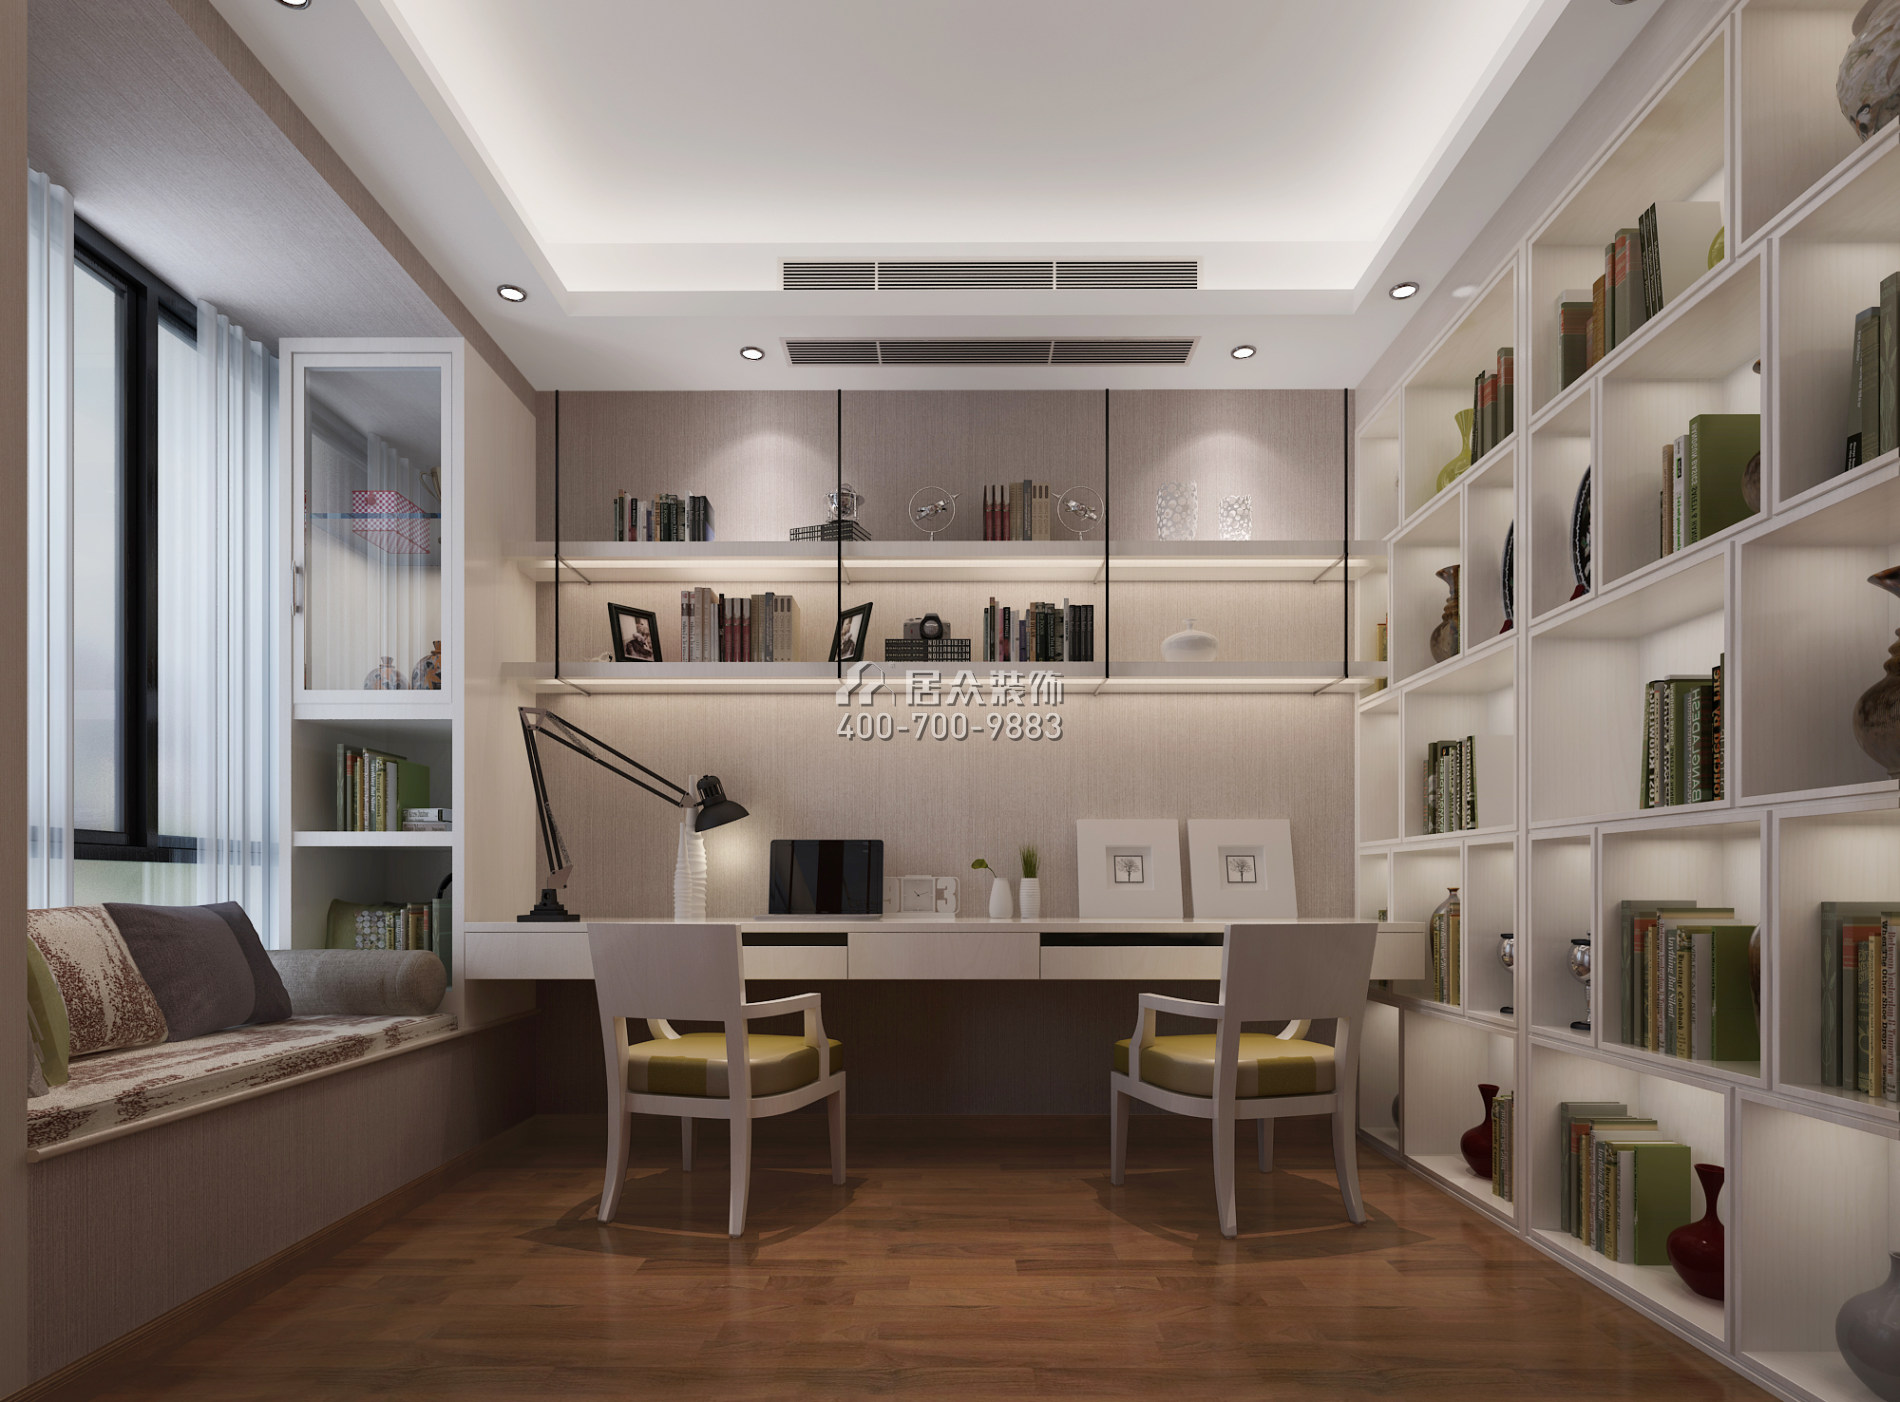 华侨城天鹅湖270平方米中式风格平层户型书房装修效果图